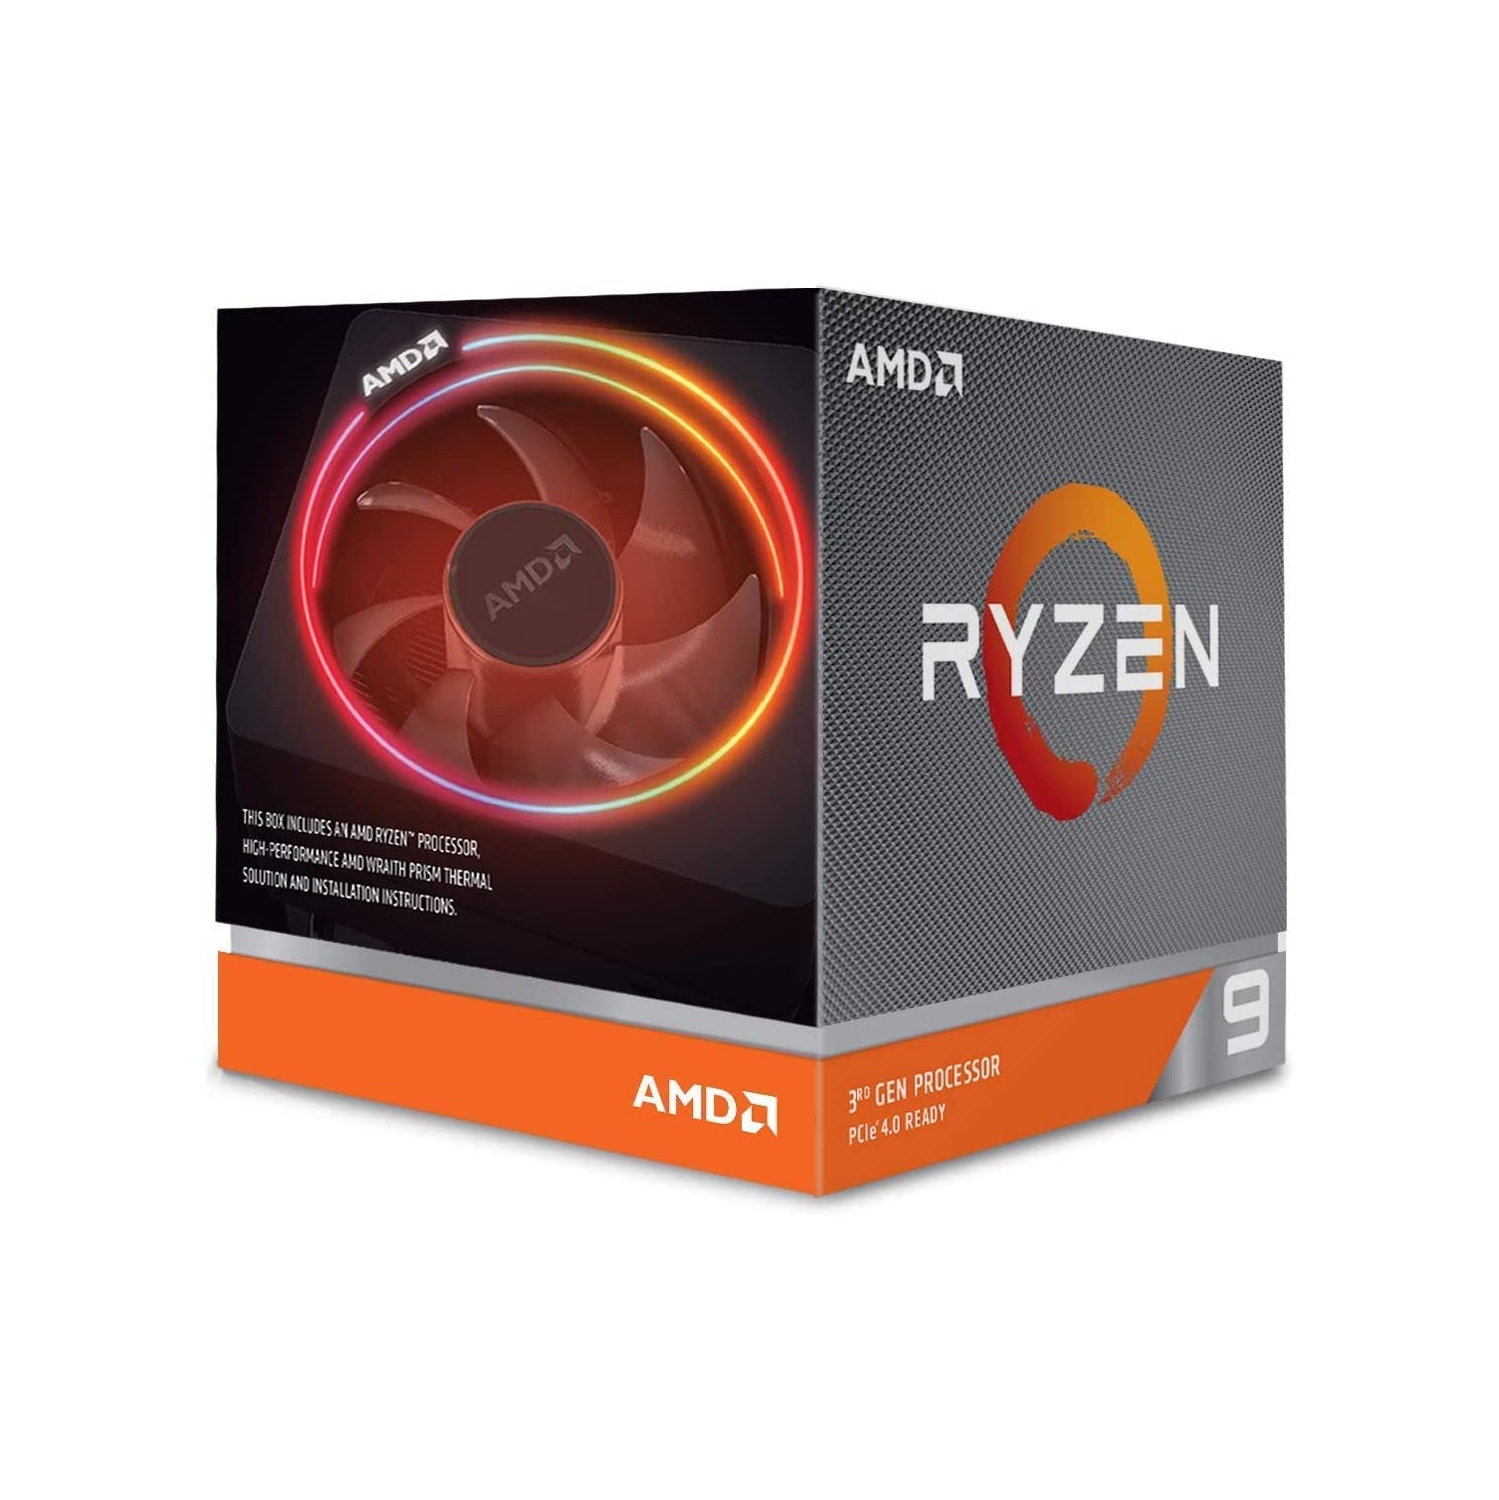 AMD Ryzen 9 3900X 12-core, 24-thread unlocked desktop processor